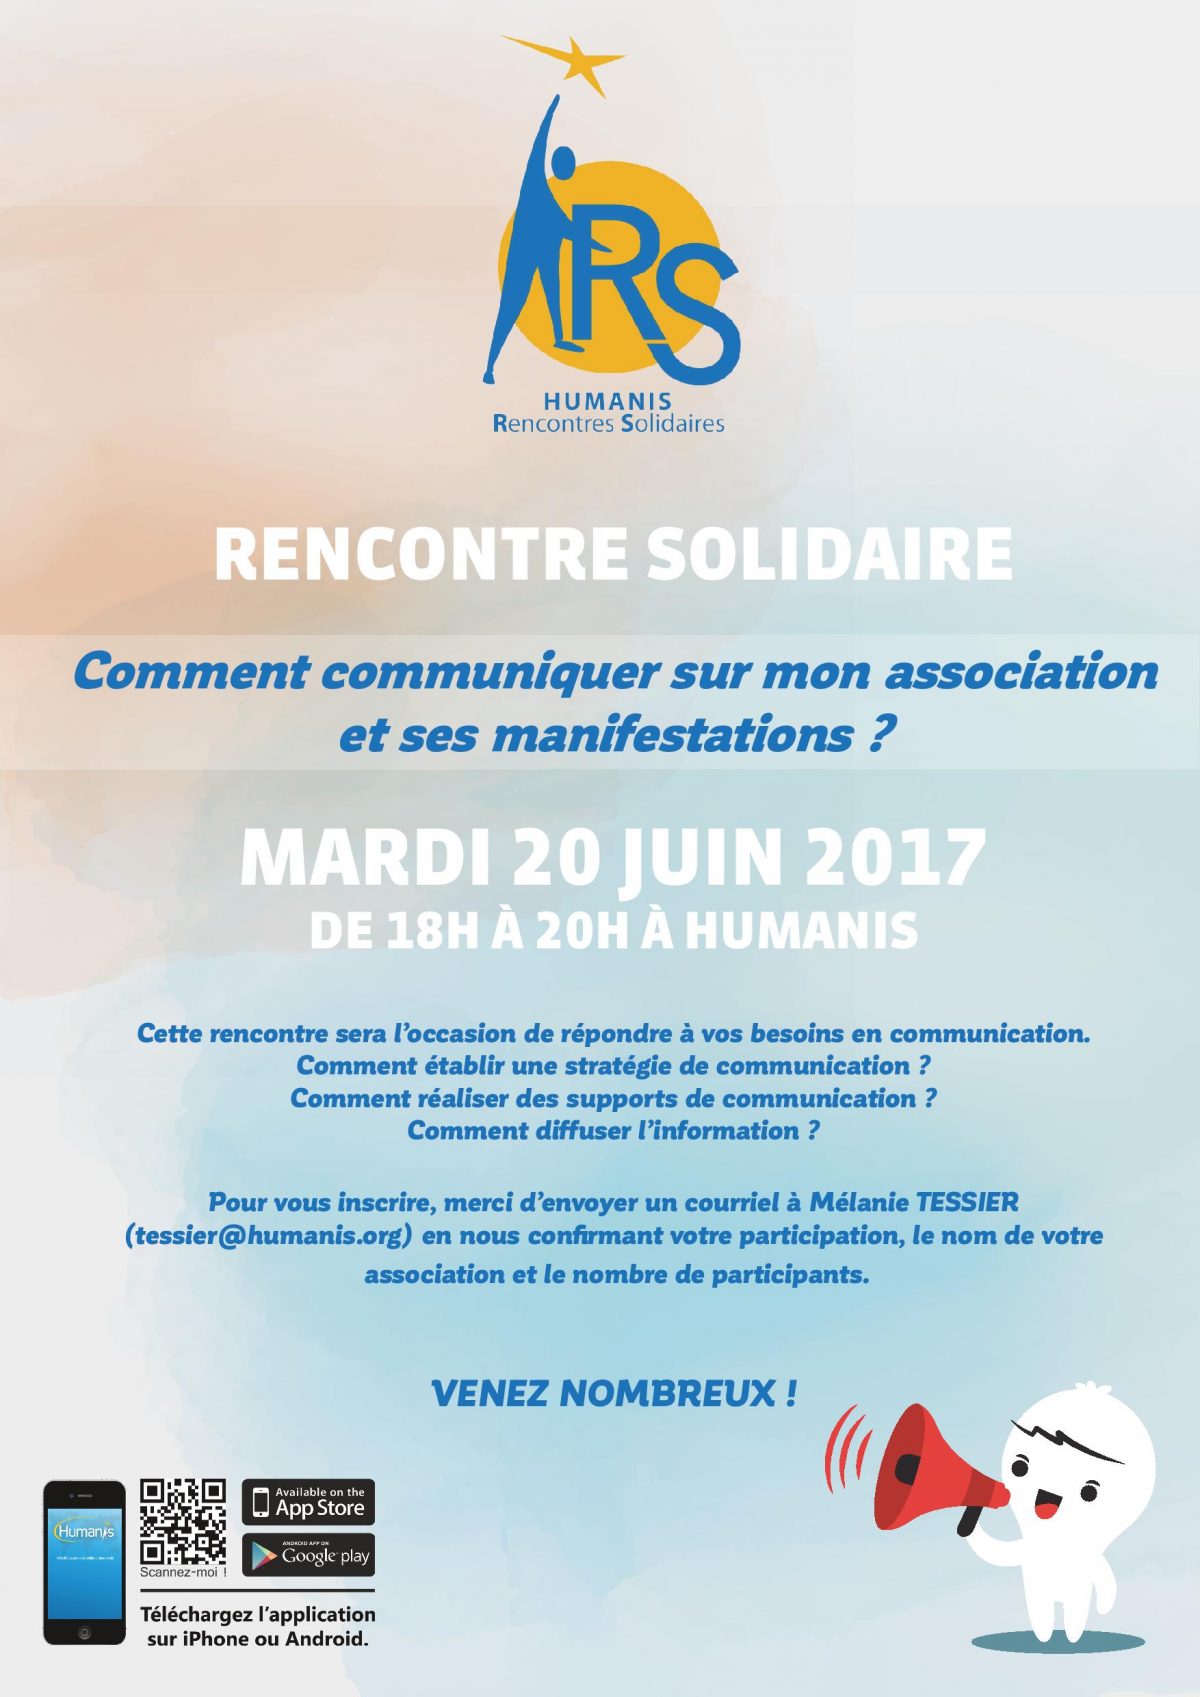 Rencontre solidaire Humanis, Collectif d'Associations de Solidarité Internationale